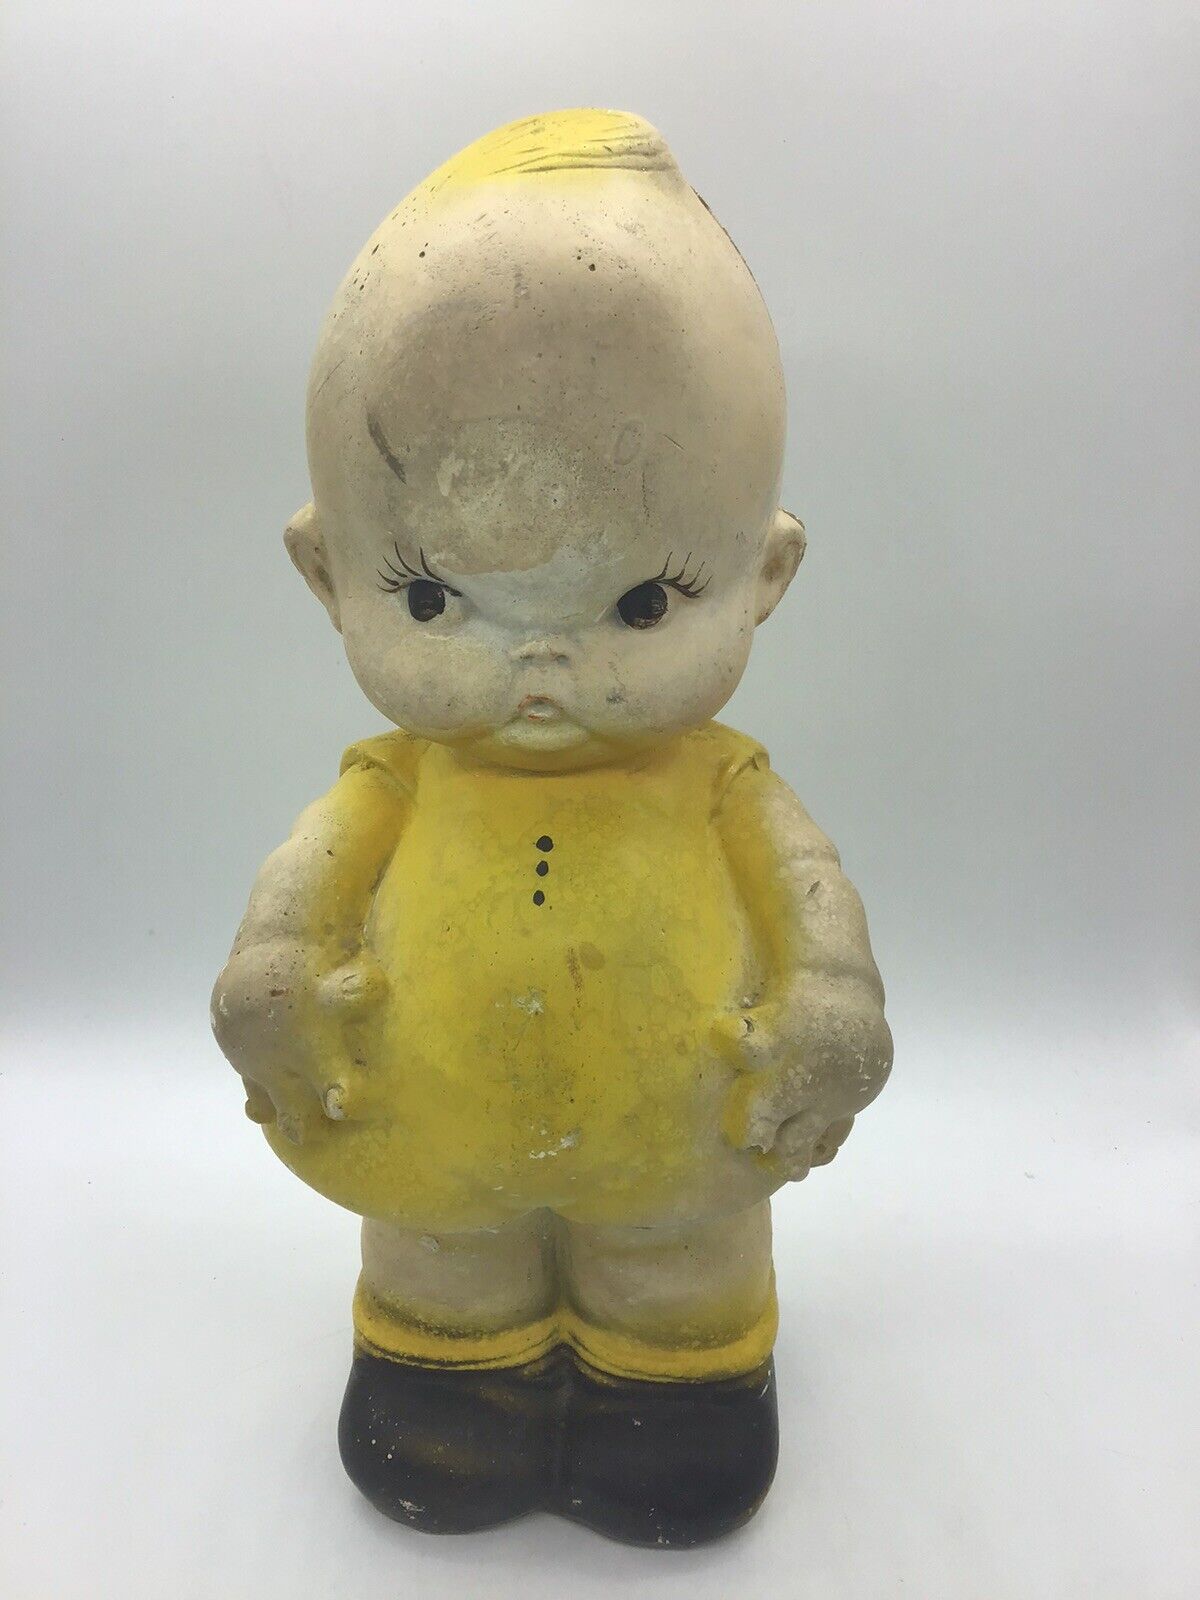 Vintage Chalkware Kewpie Doll Figure